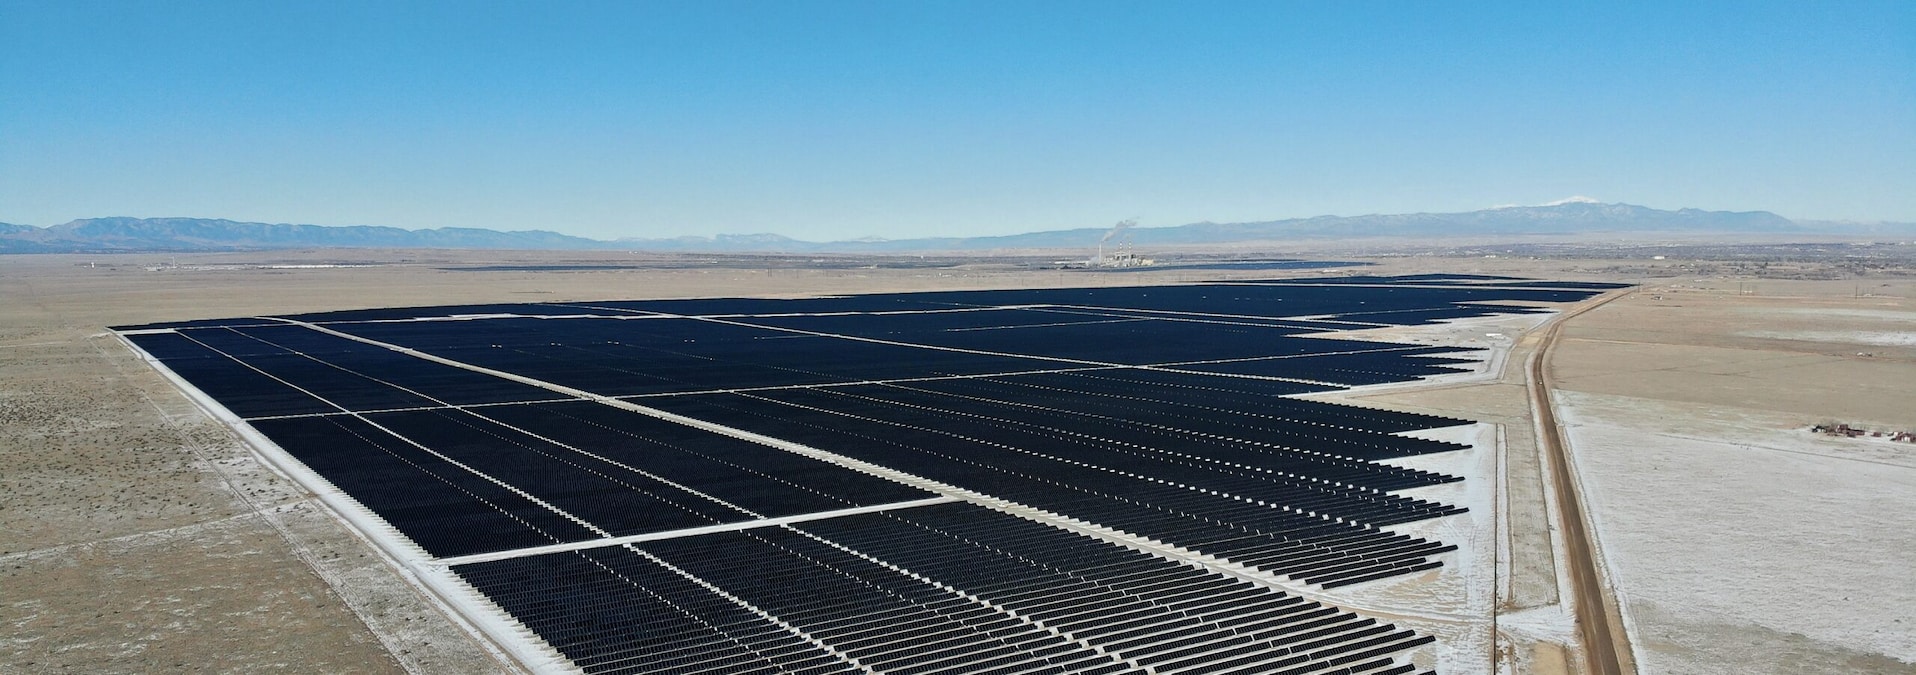 The 293 megawatt Sun Mountain Solar project in Pueblo, Colorado